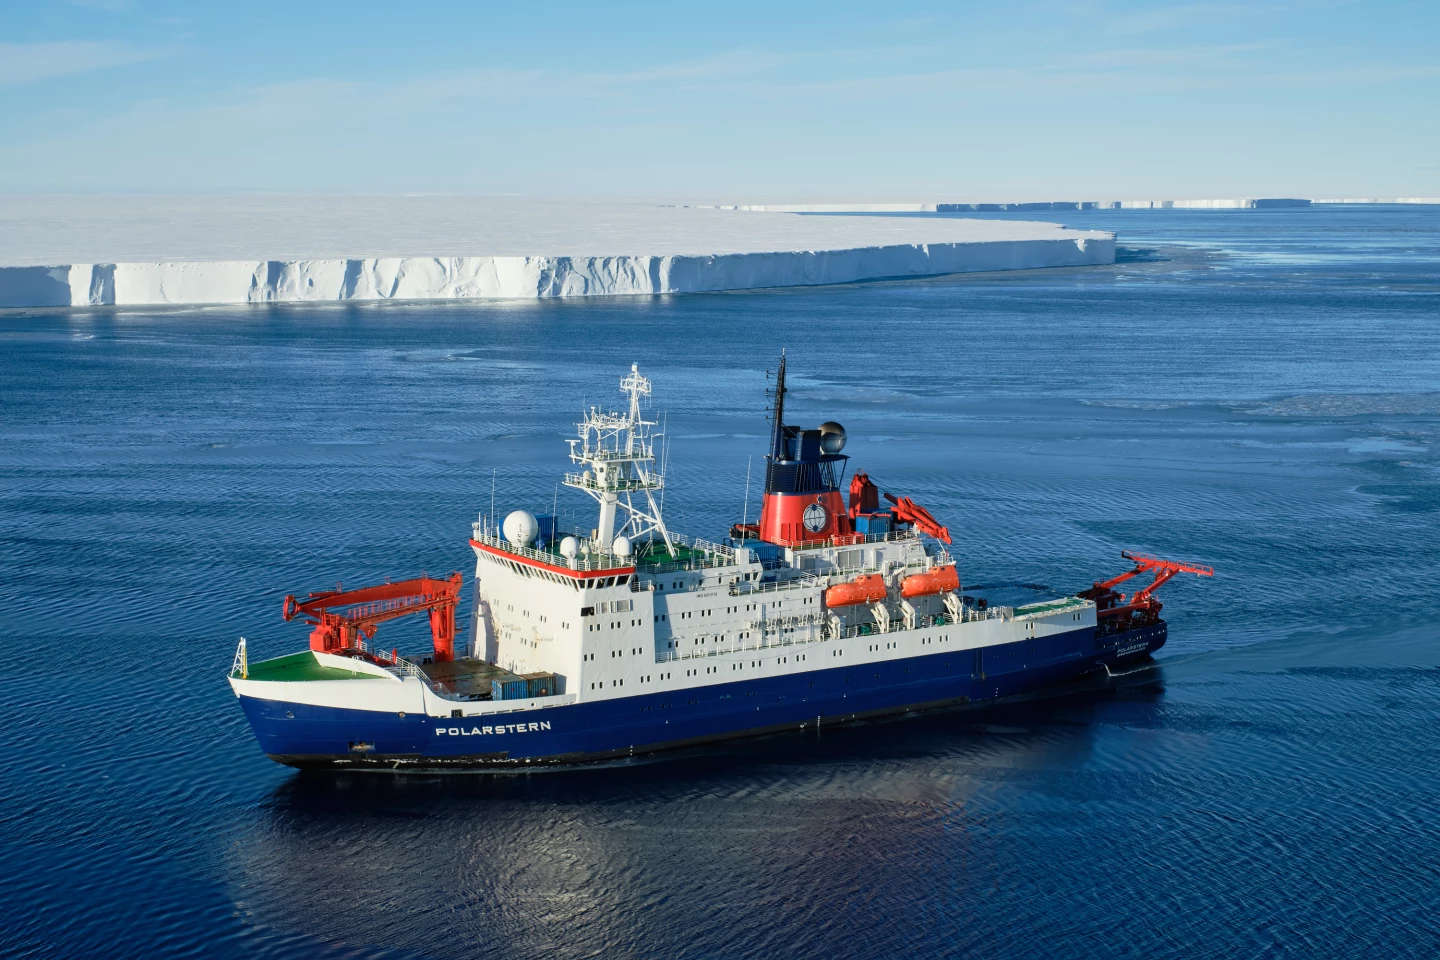 Ледокол RV Polarstern за работой в южной части Антарктического моря Уэдделла.